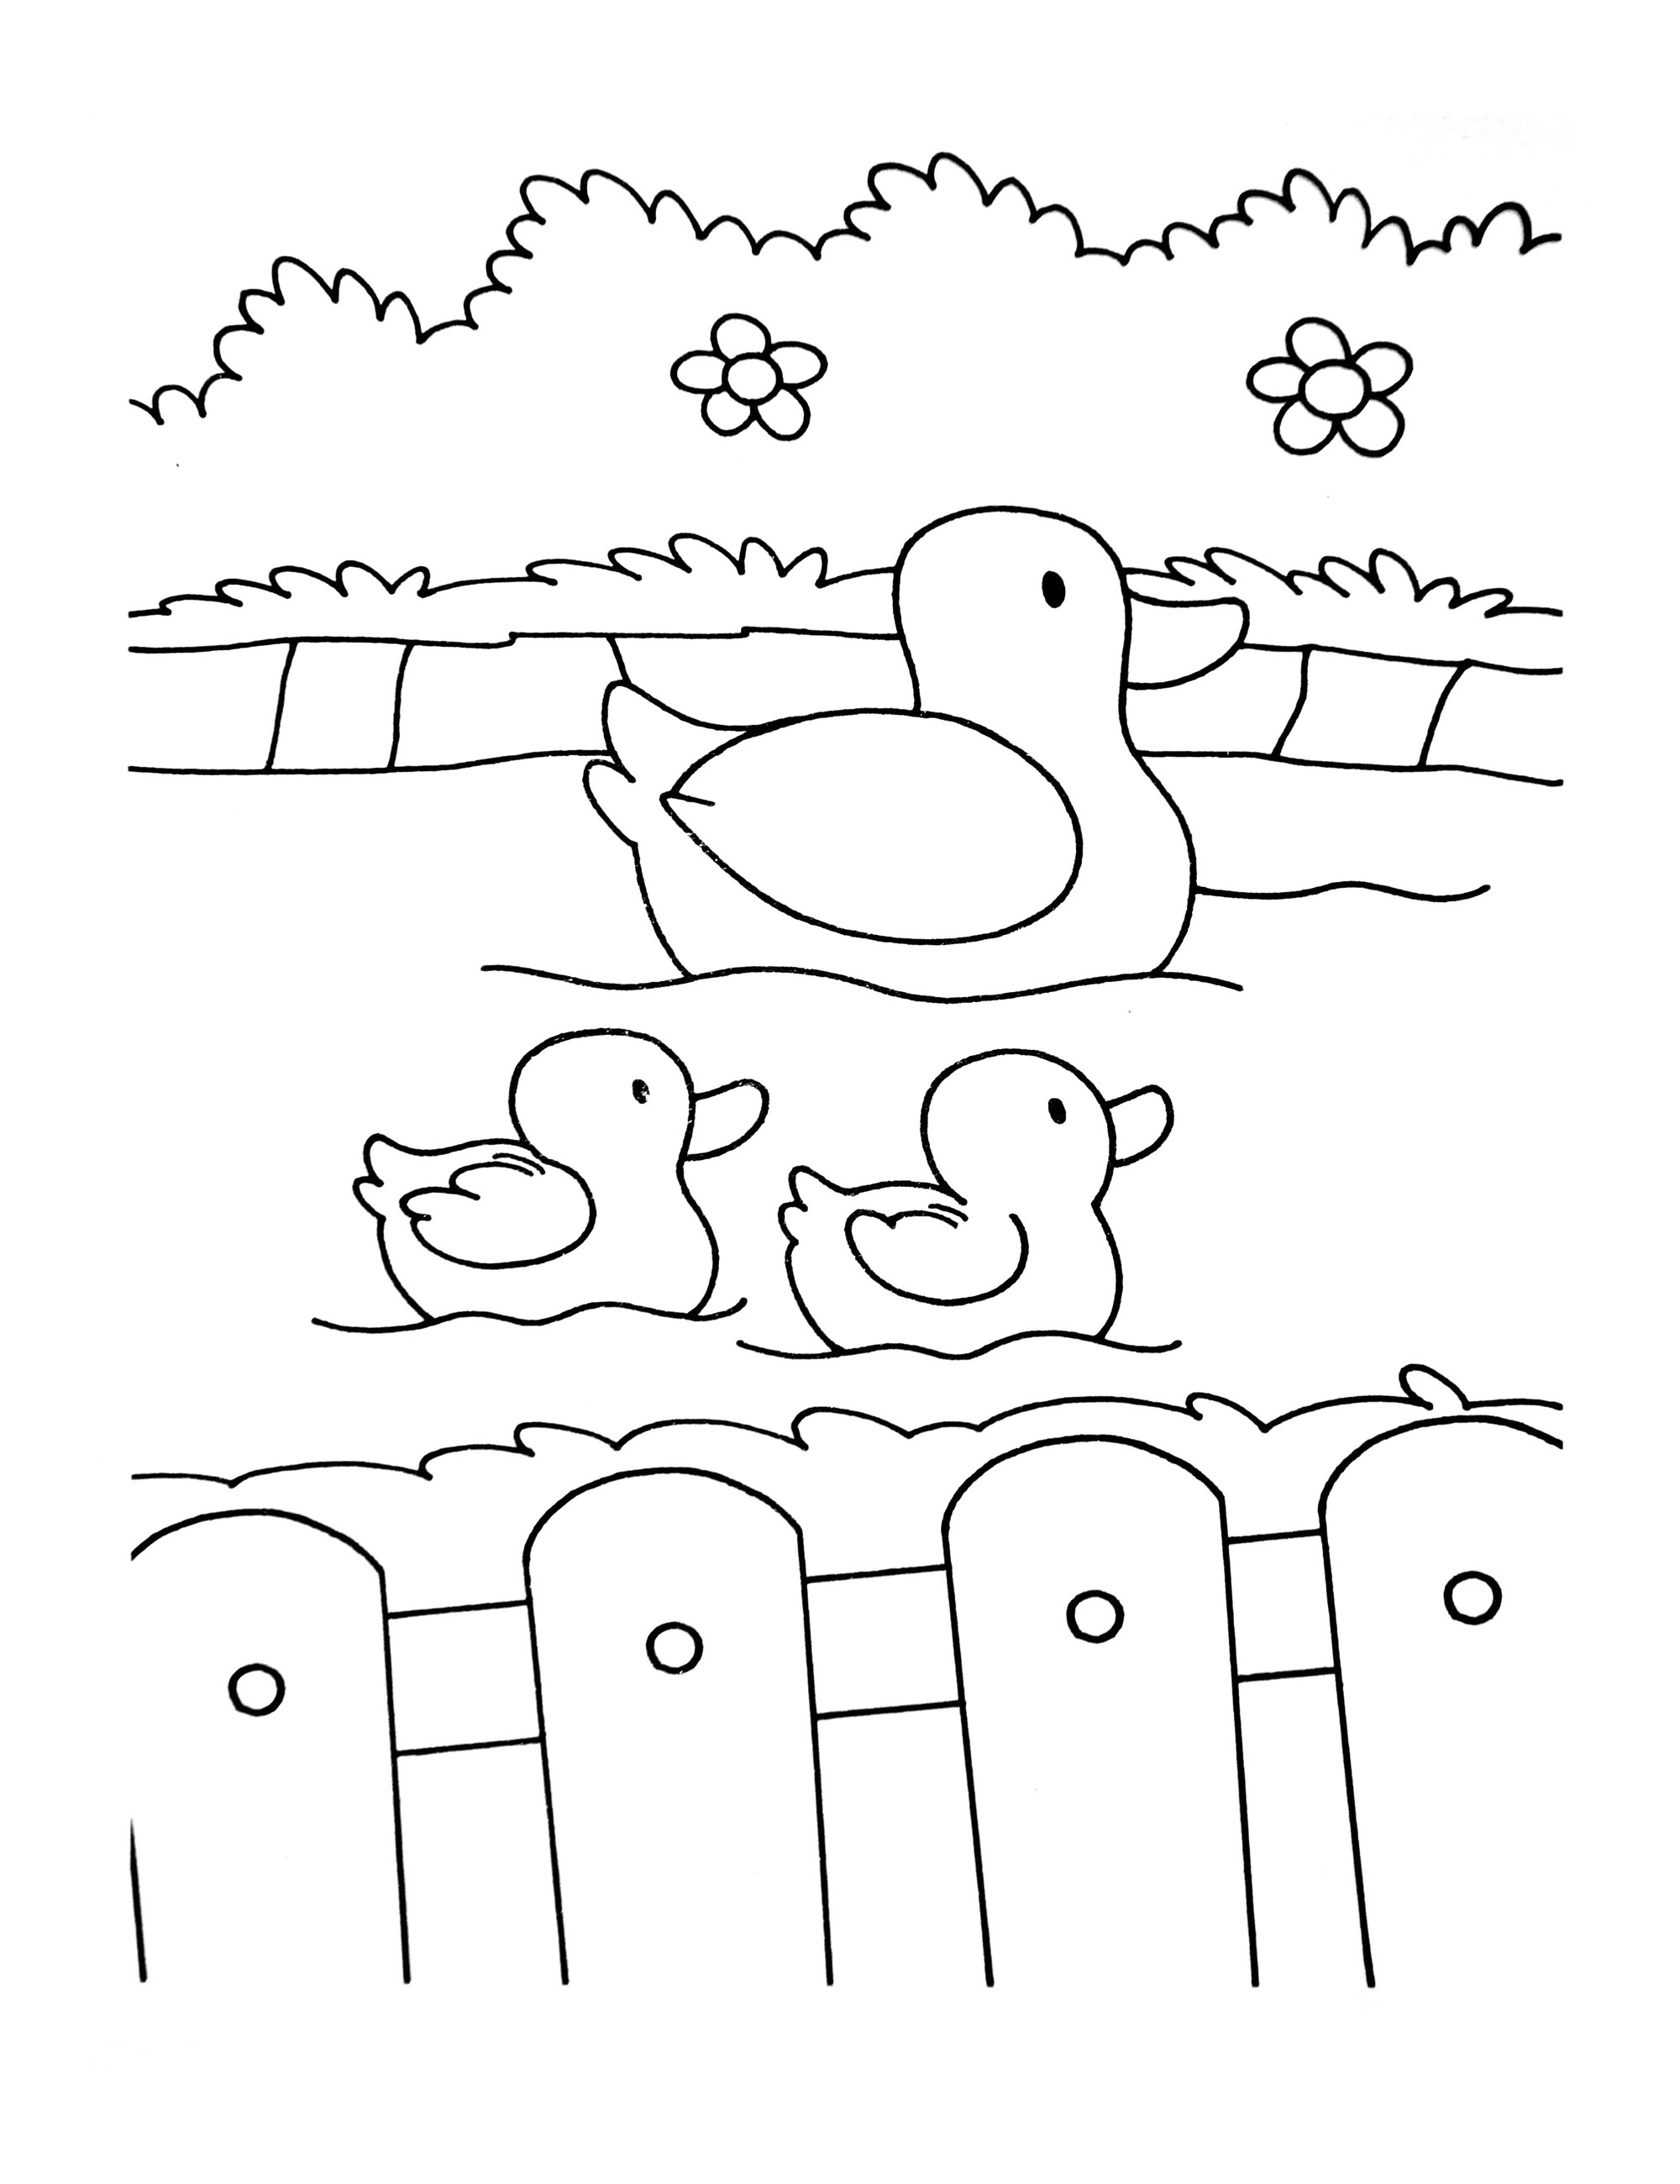 Imagem da Quinta para colorir, fácil para as crianças